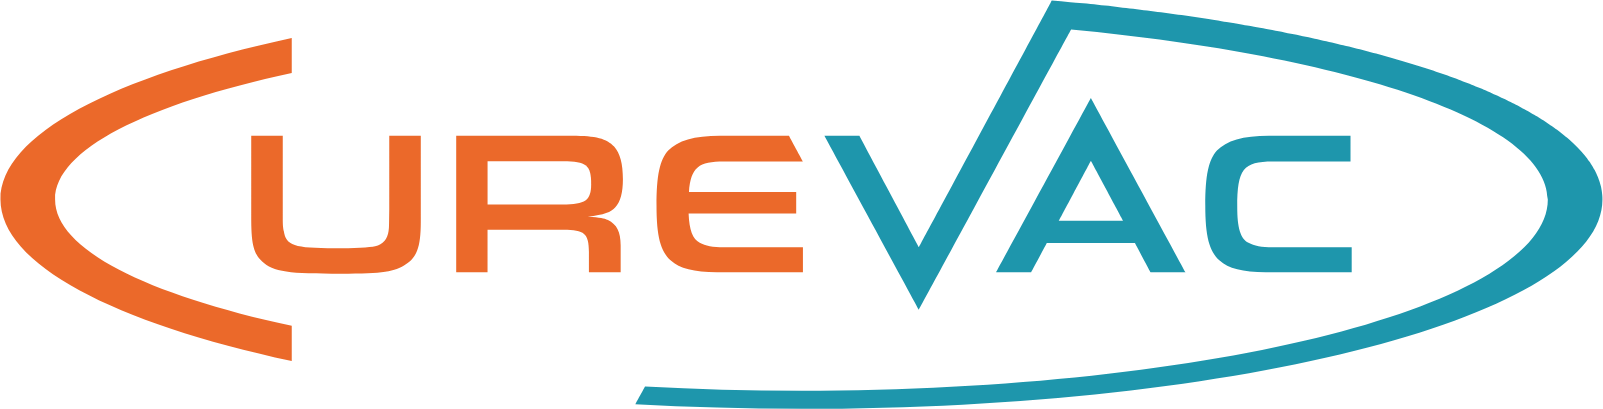 Curevac logo (PNG transparent)